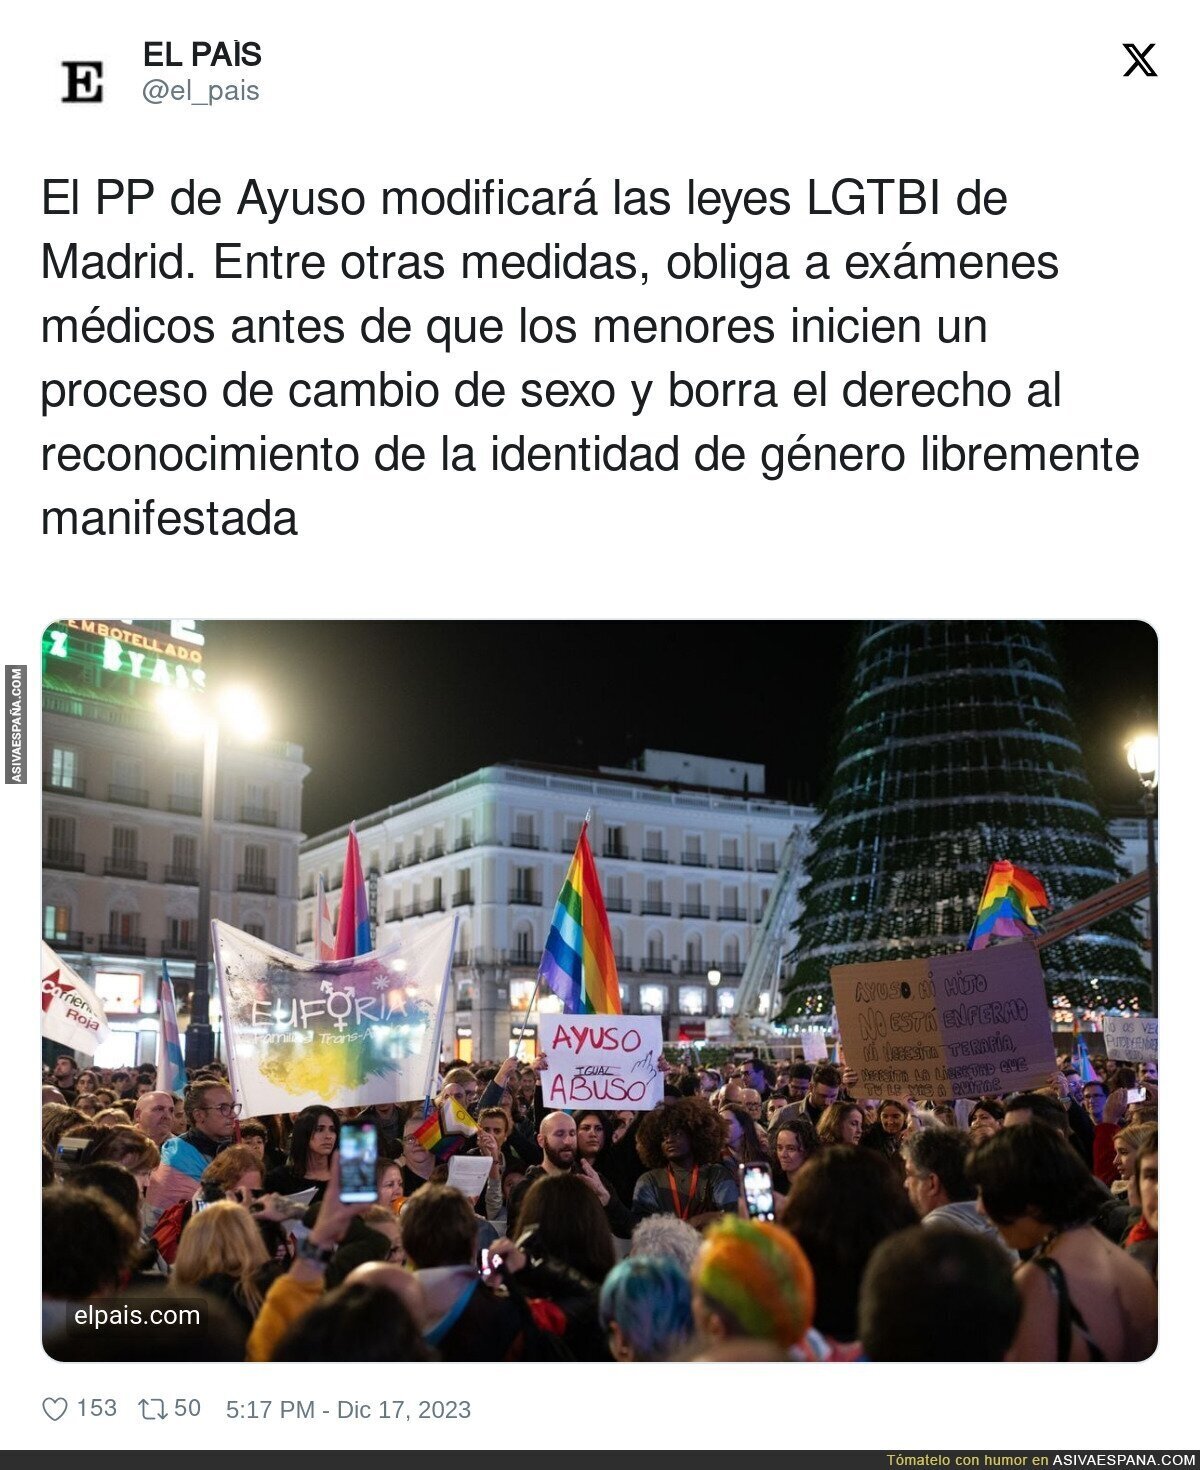 El PP de Ayuso modificará las leyes LGTBI de Madrid